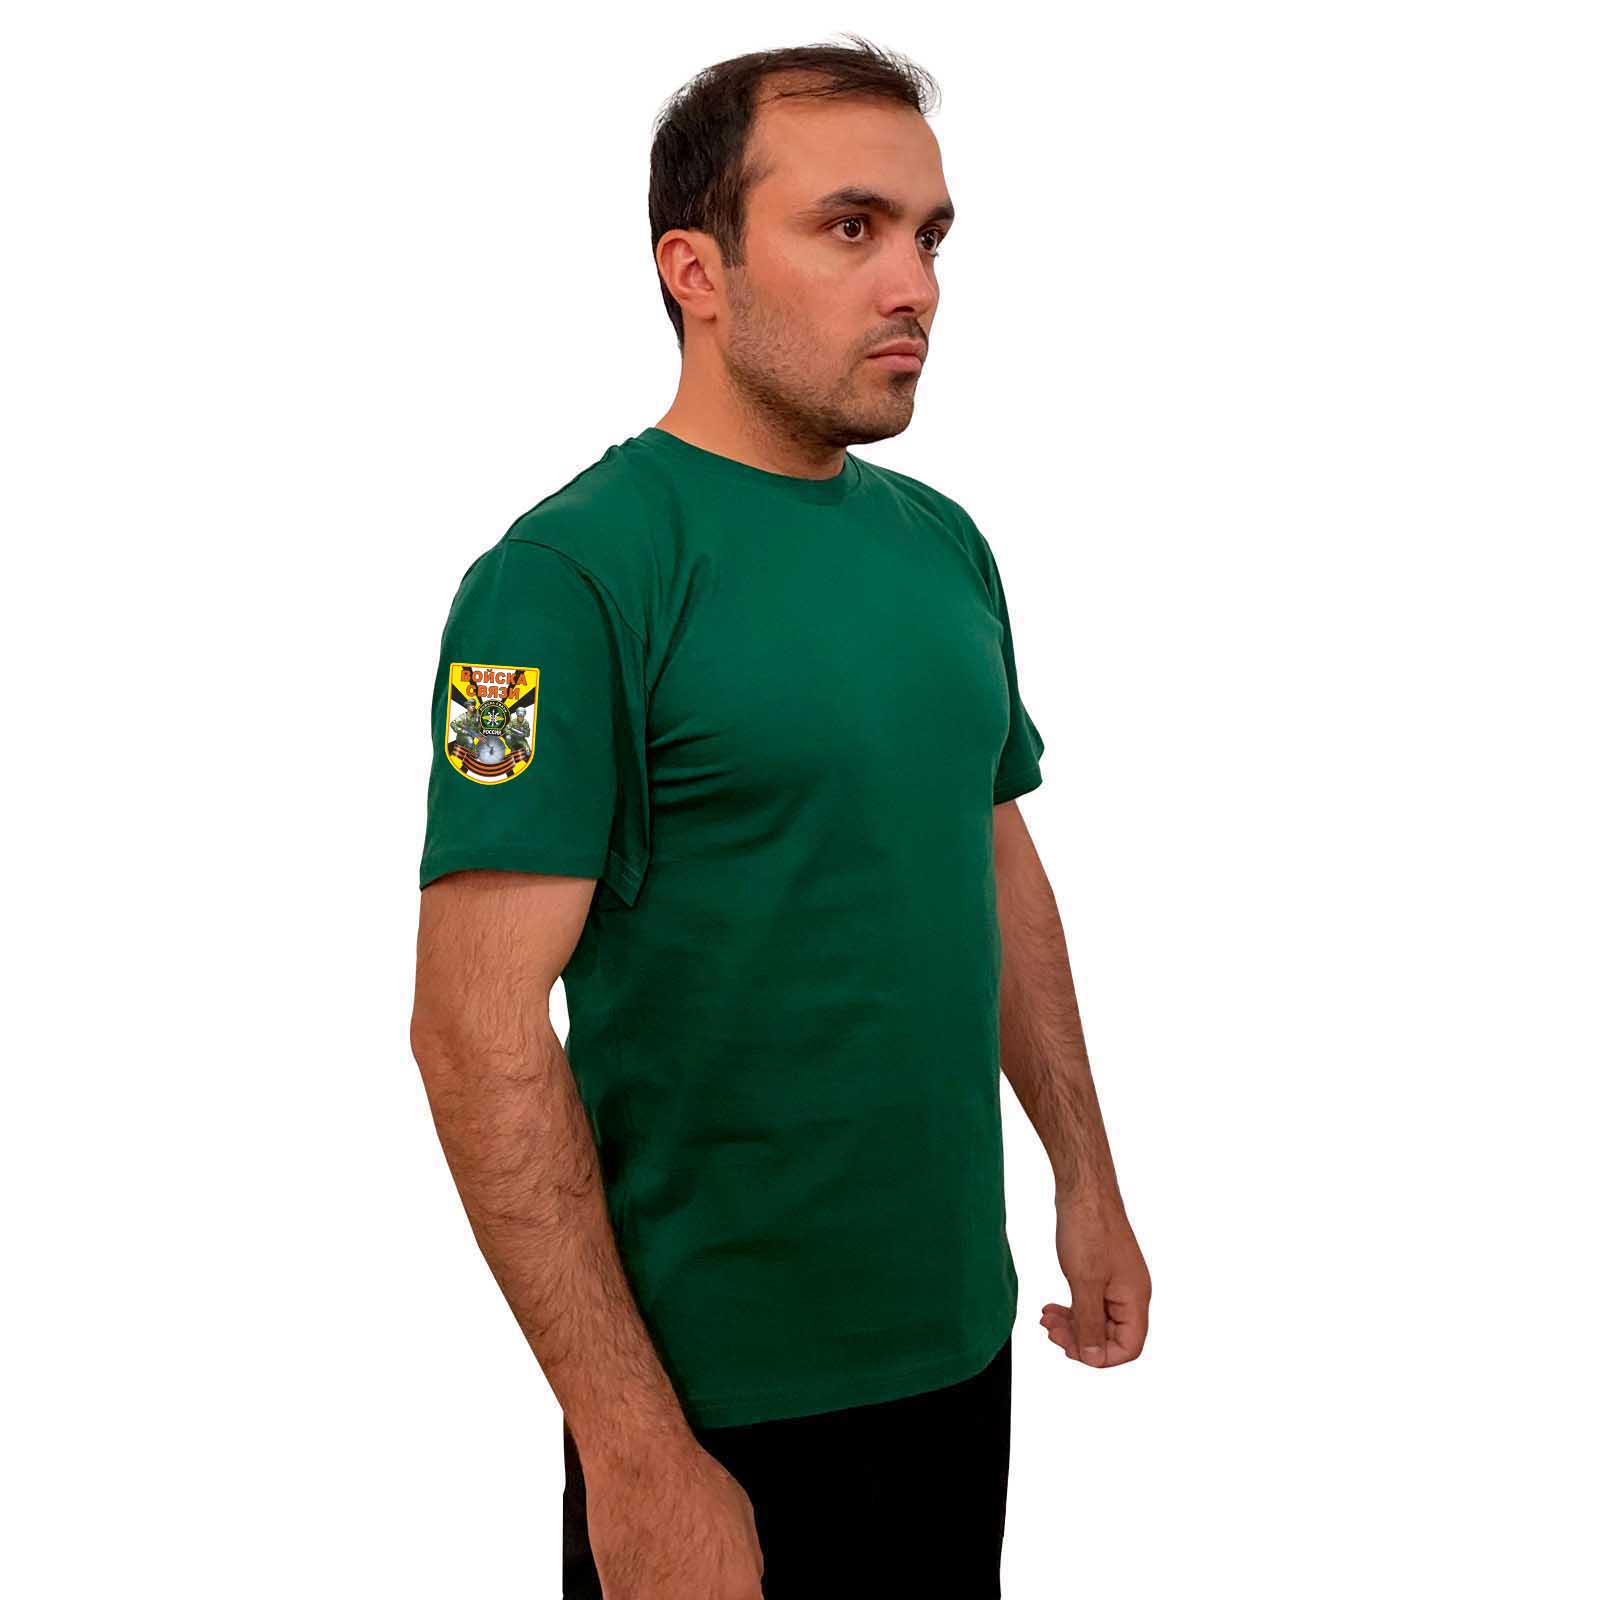 Купить надежную зеленую футболку с термотрансфером Войска Связи выгодно